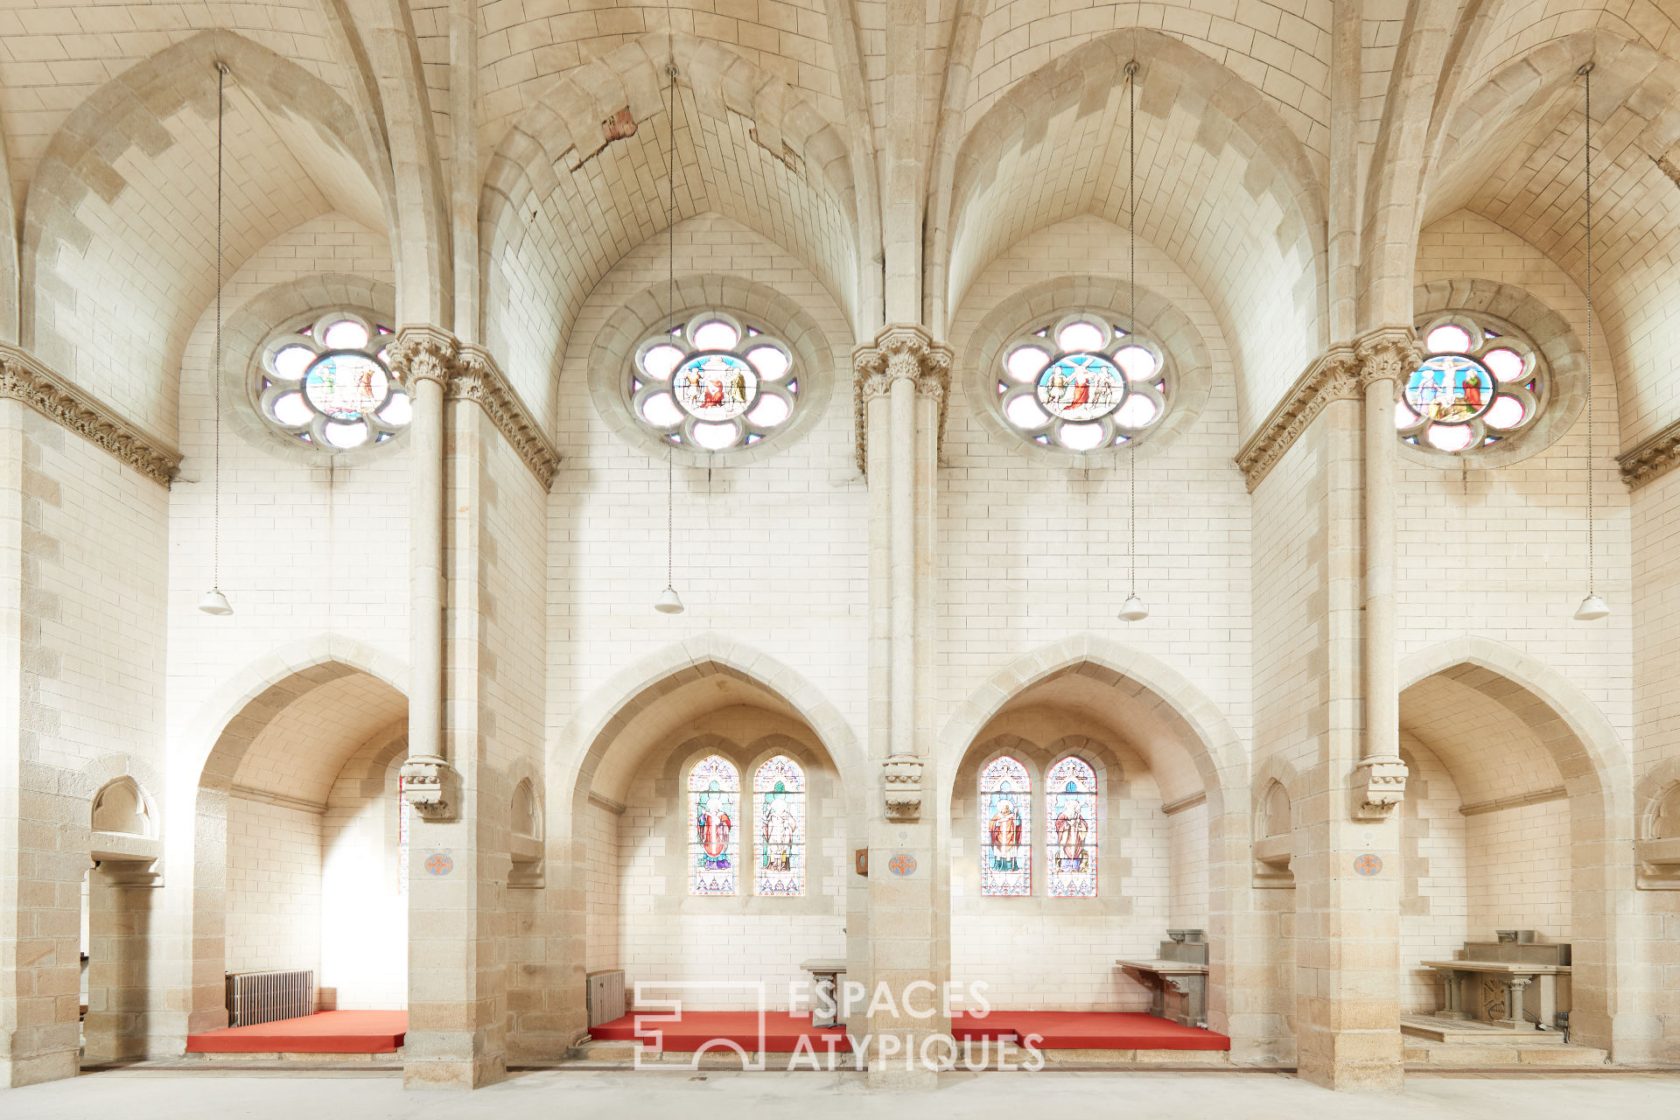 Breton chapel